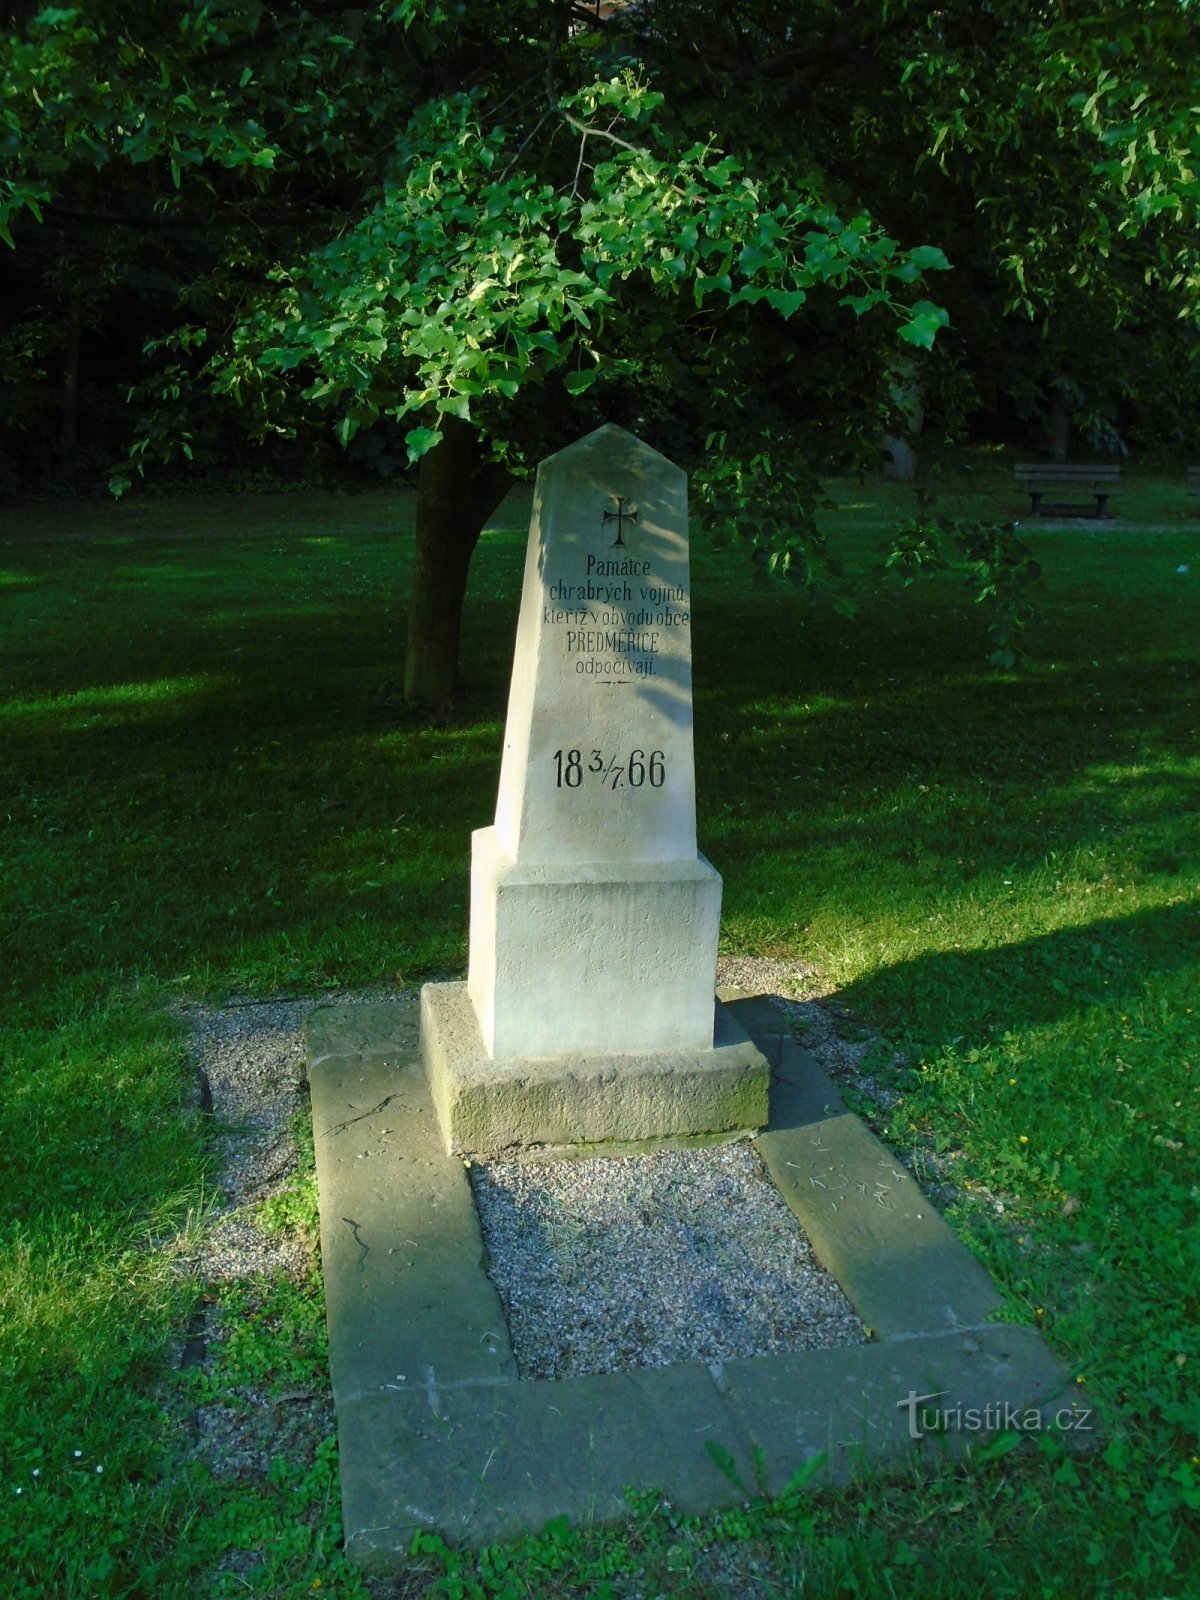 Đài tưởng niệm những người đã chết trong Chiến tranh Phổ-Áo ở Tyršové sady (Předměřice nad Labem)